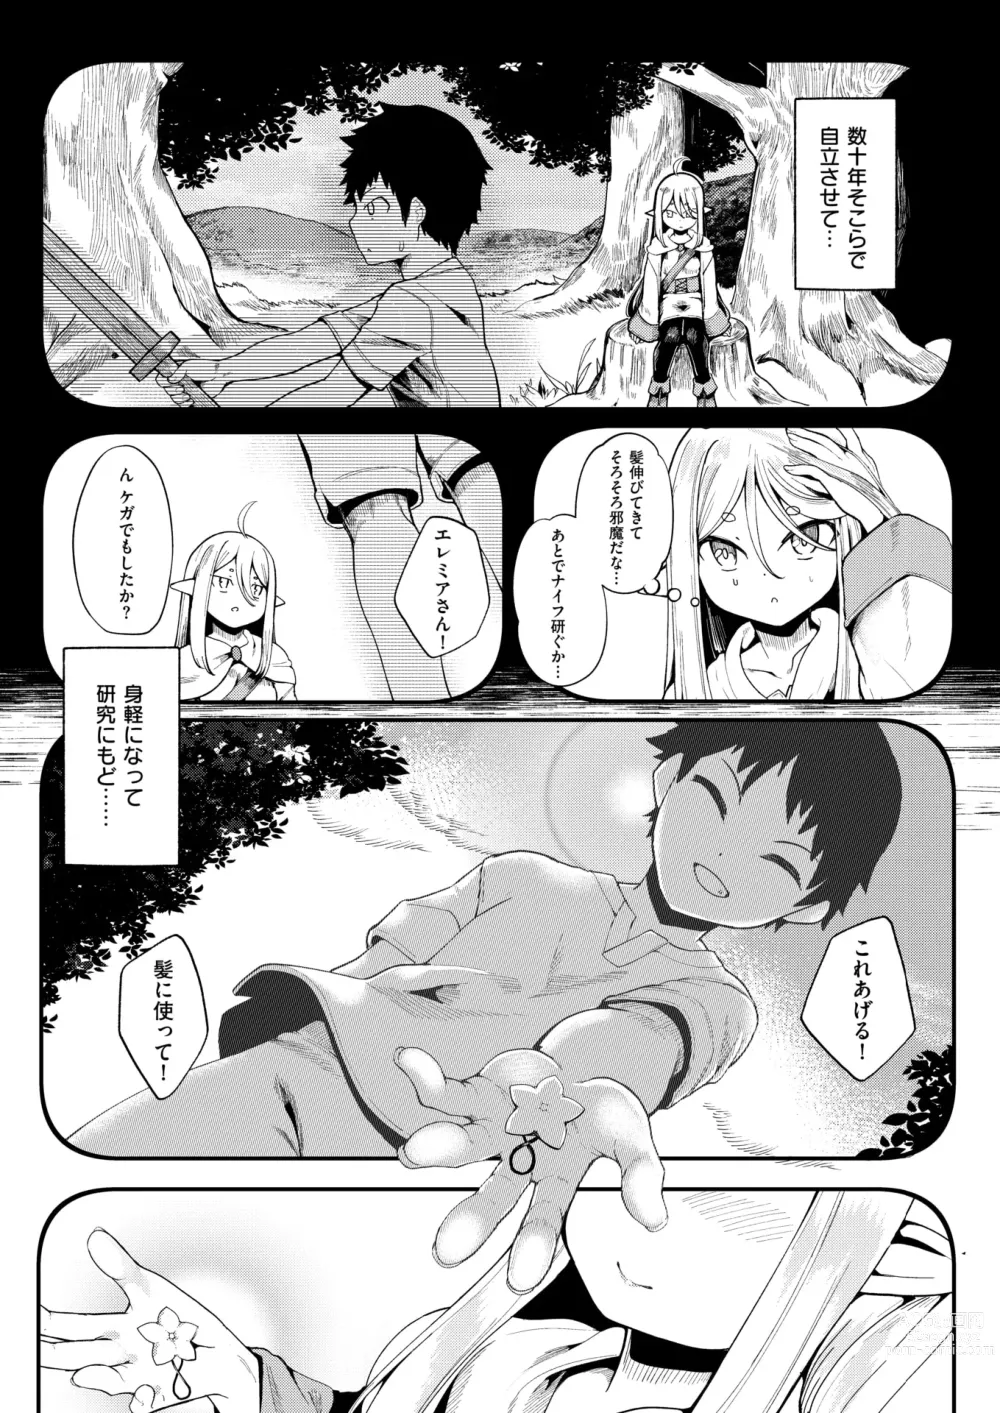 Page 3 of manga Kono Kokoro Oya Shirazu